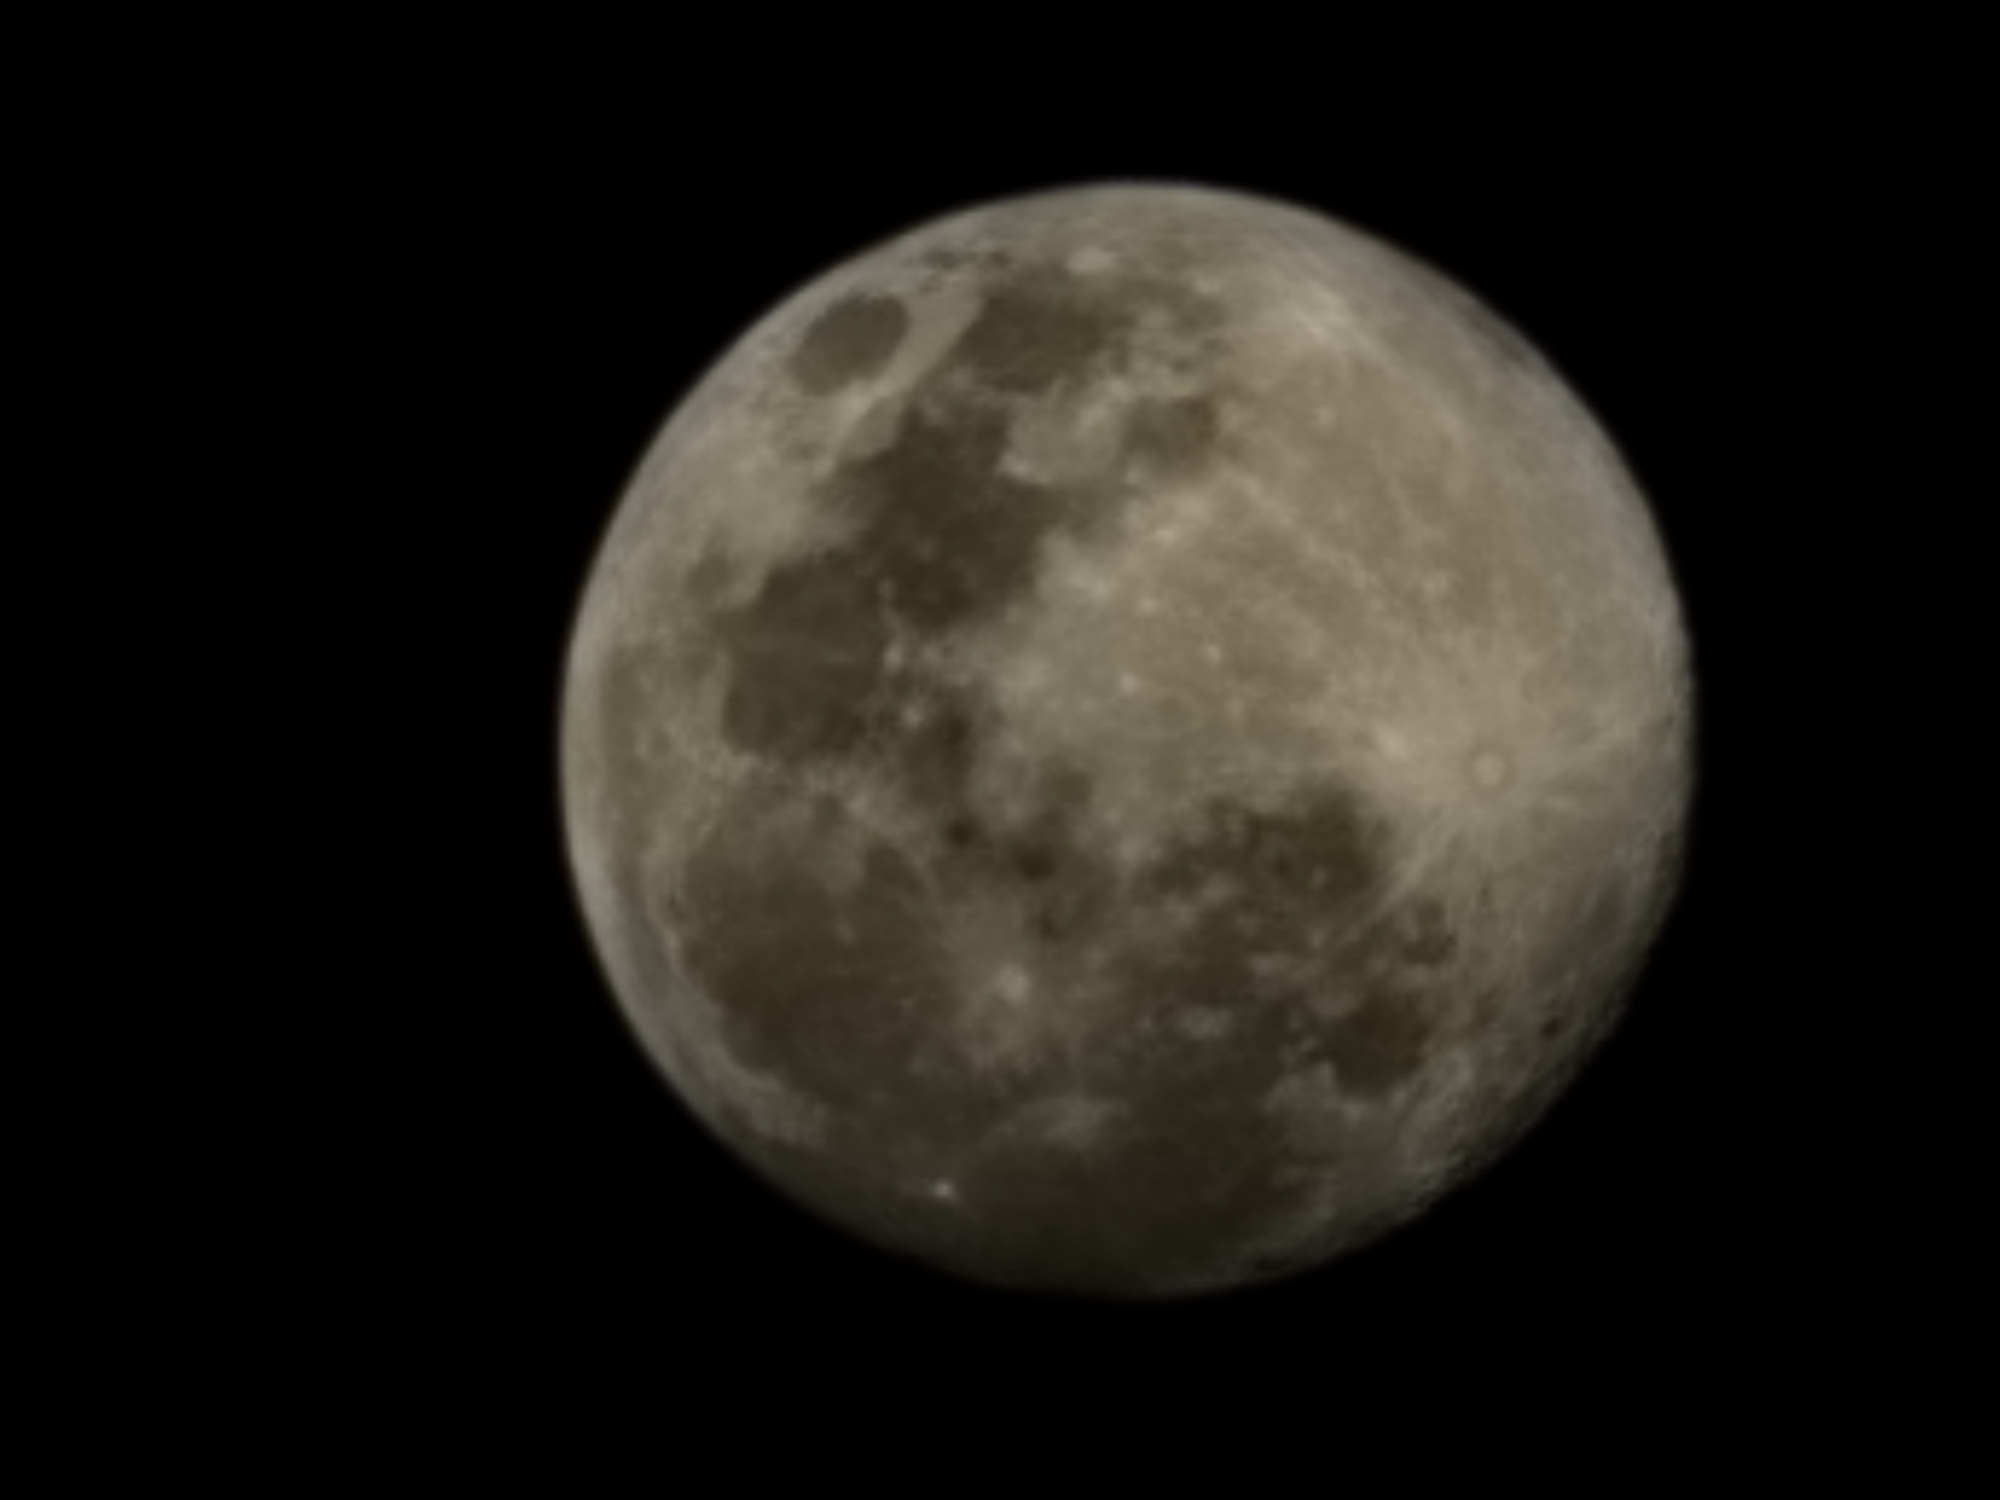 Nhìn từ khả năng “Space Zoom” chụp trăng của Galaxy S23 Ultra, câu chuyện thật - giả giữa AI và nhiếp ảnh - Ảnh 6.